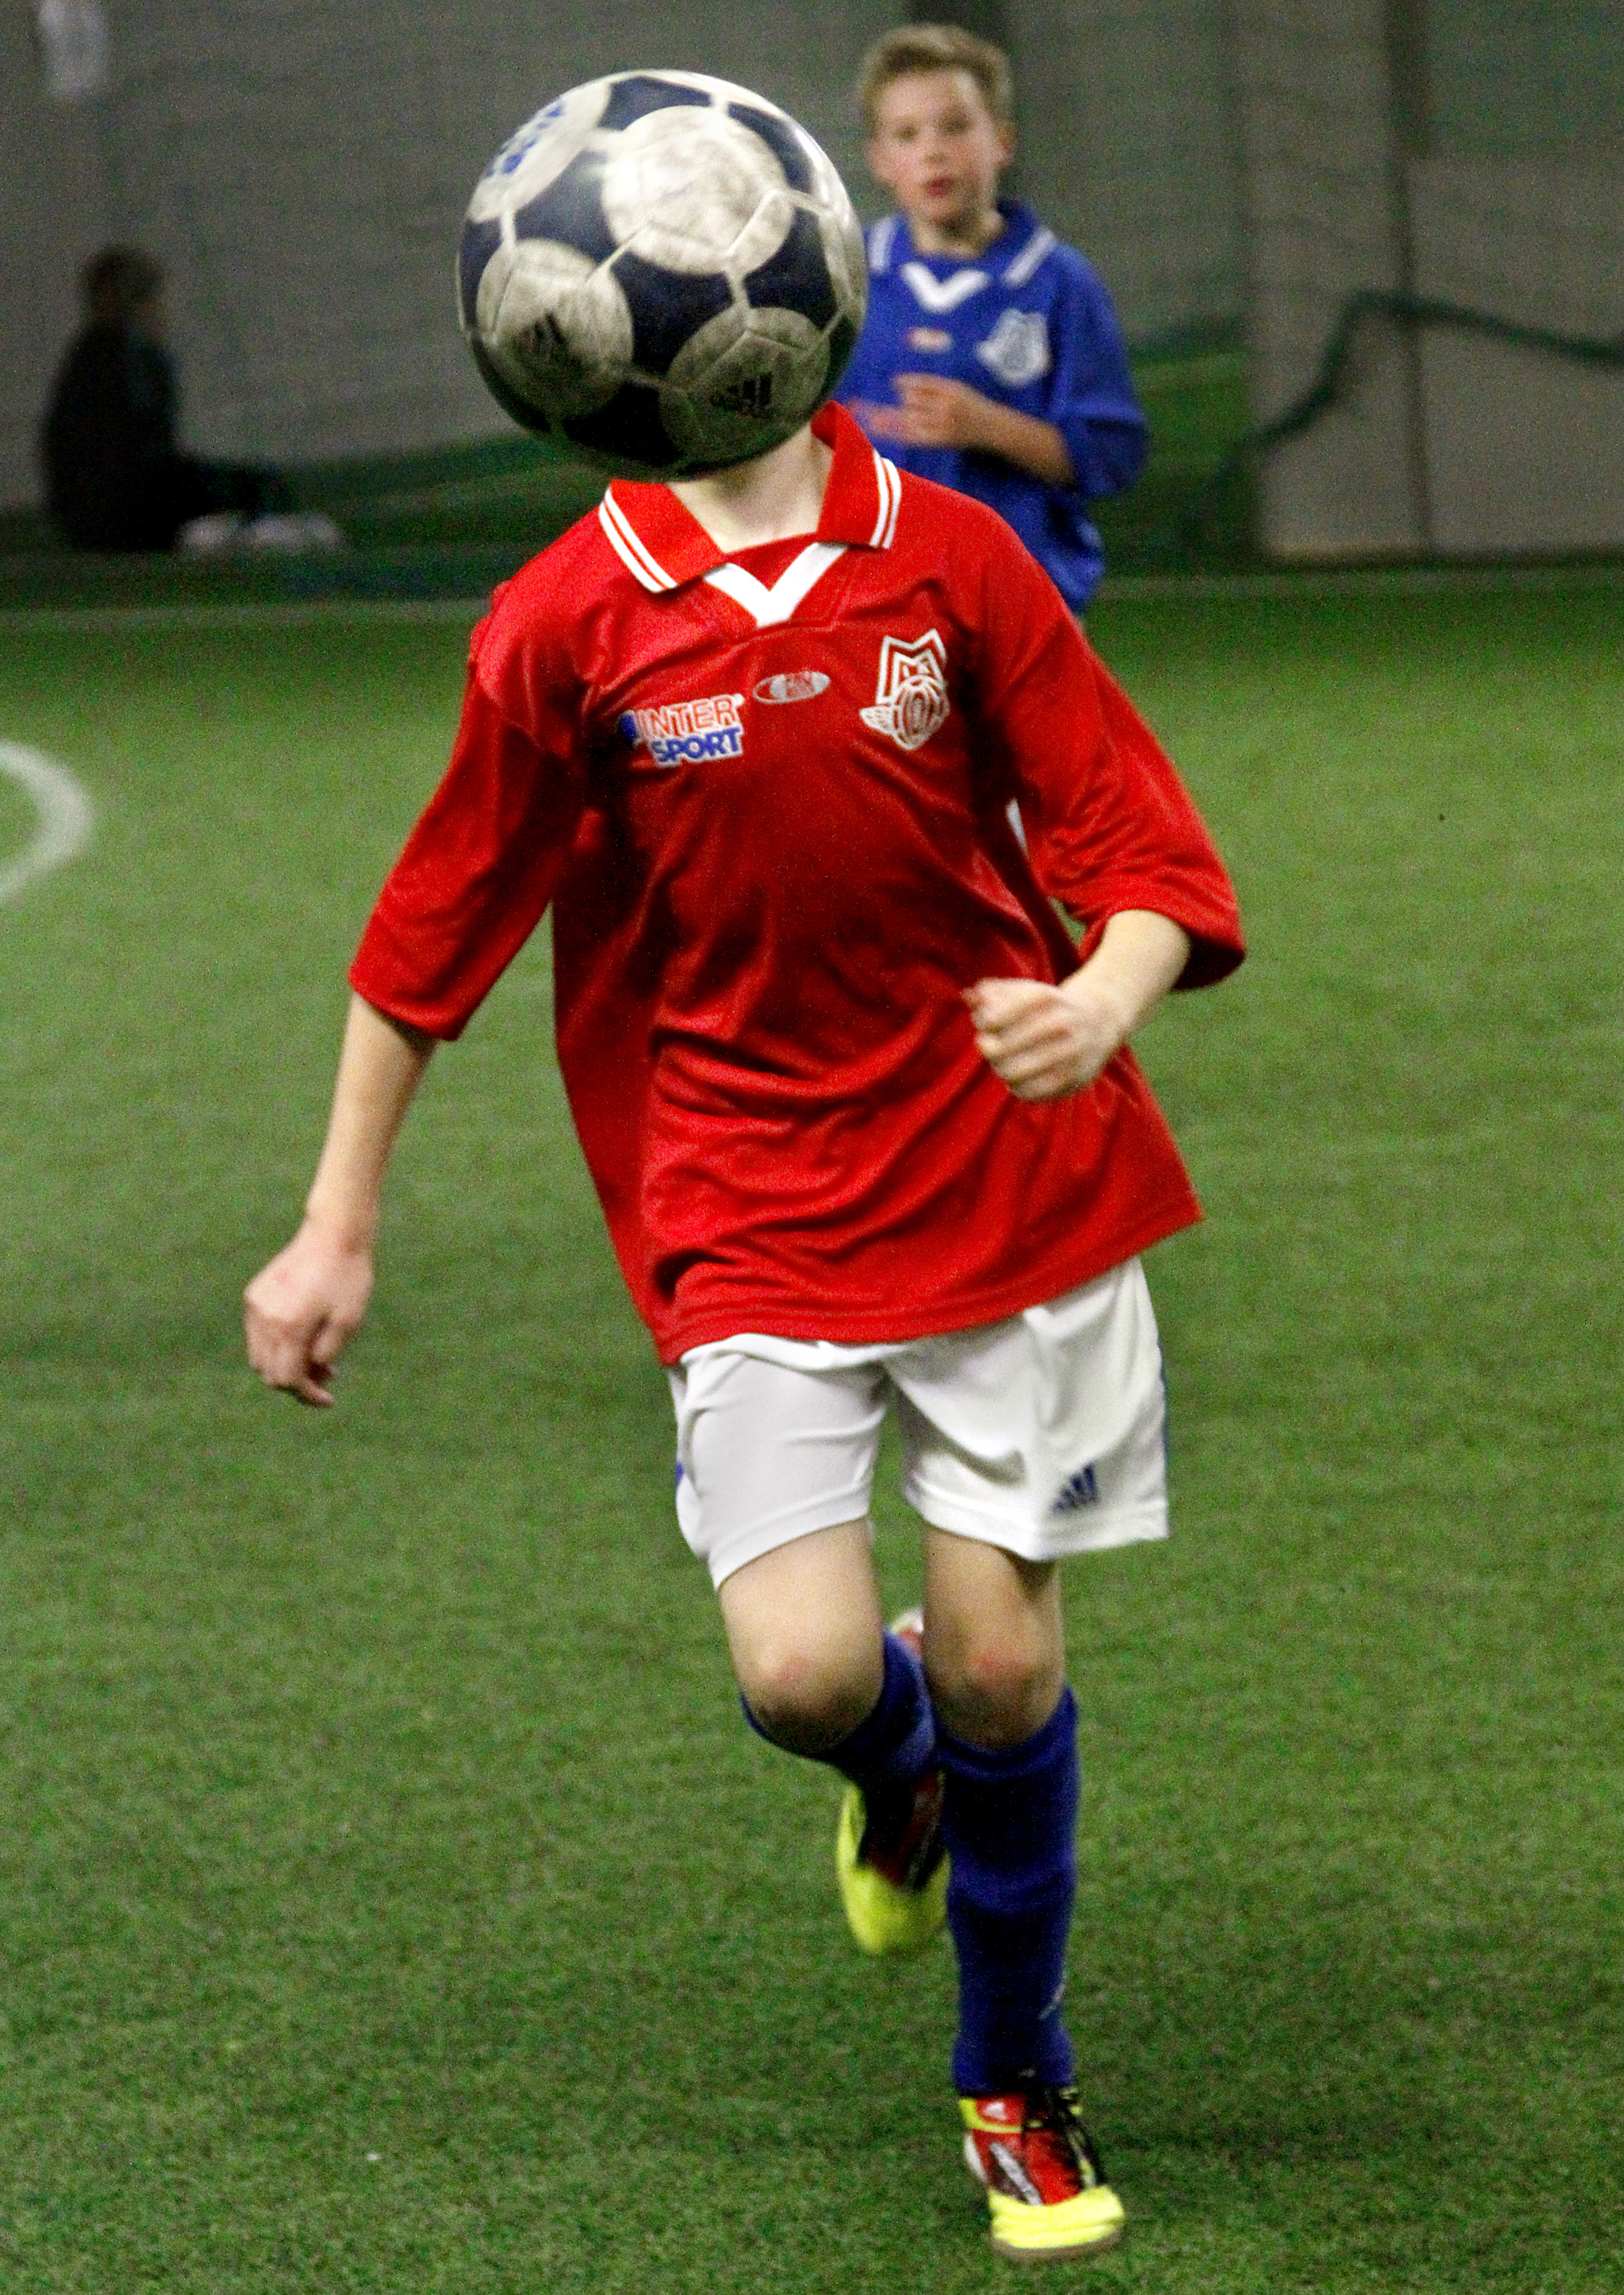 FLODA BOIF BJUDER IN TILL ÅRETS UPPLAGA AV FÖRBO CUP 2014 Förbo cup, som tidigare kallades Förortscupen, är en inomhuscup i fotboll för tjejer och killar i åldrarna 8-12 år.